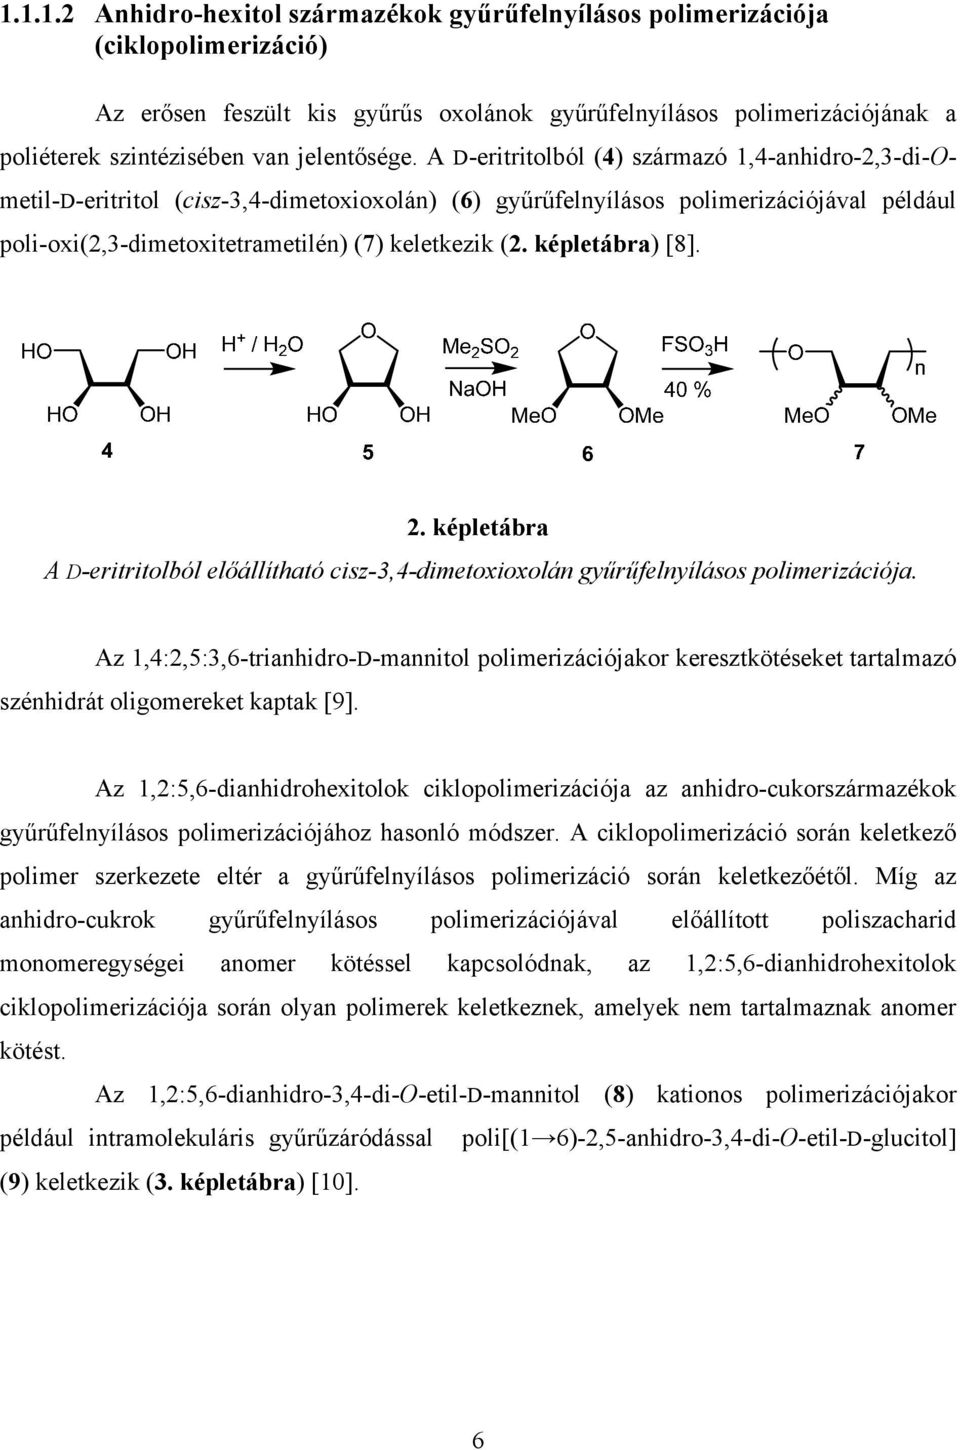 A D-eritritolból (4) származó 1,4-anhidro-2,3-di-metil-D-eritritol (cisz-3,4-dimetoxioxolán) (6) gyűrűfelnyílásos polimerizációjával például poli-oxi(2,3-dimetoxitetrametilén) (7) keletkezik (2.